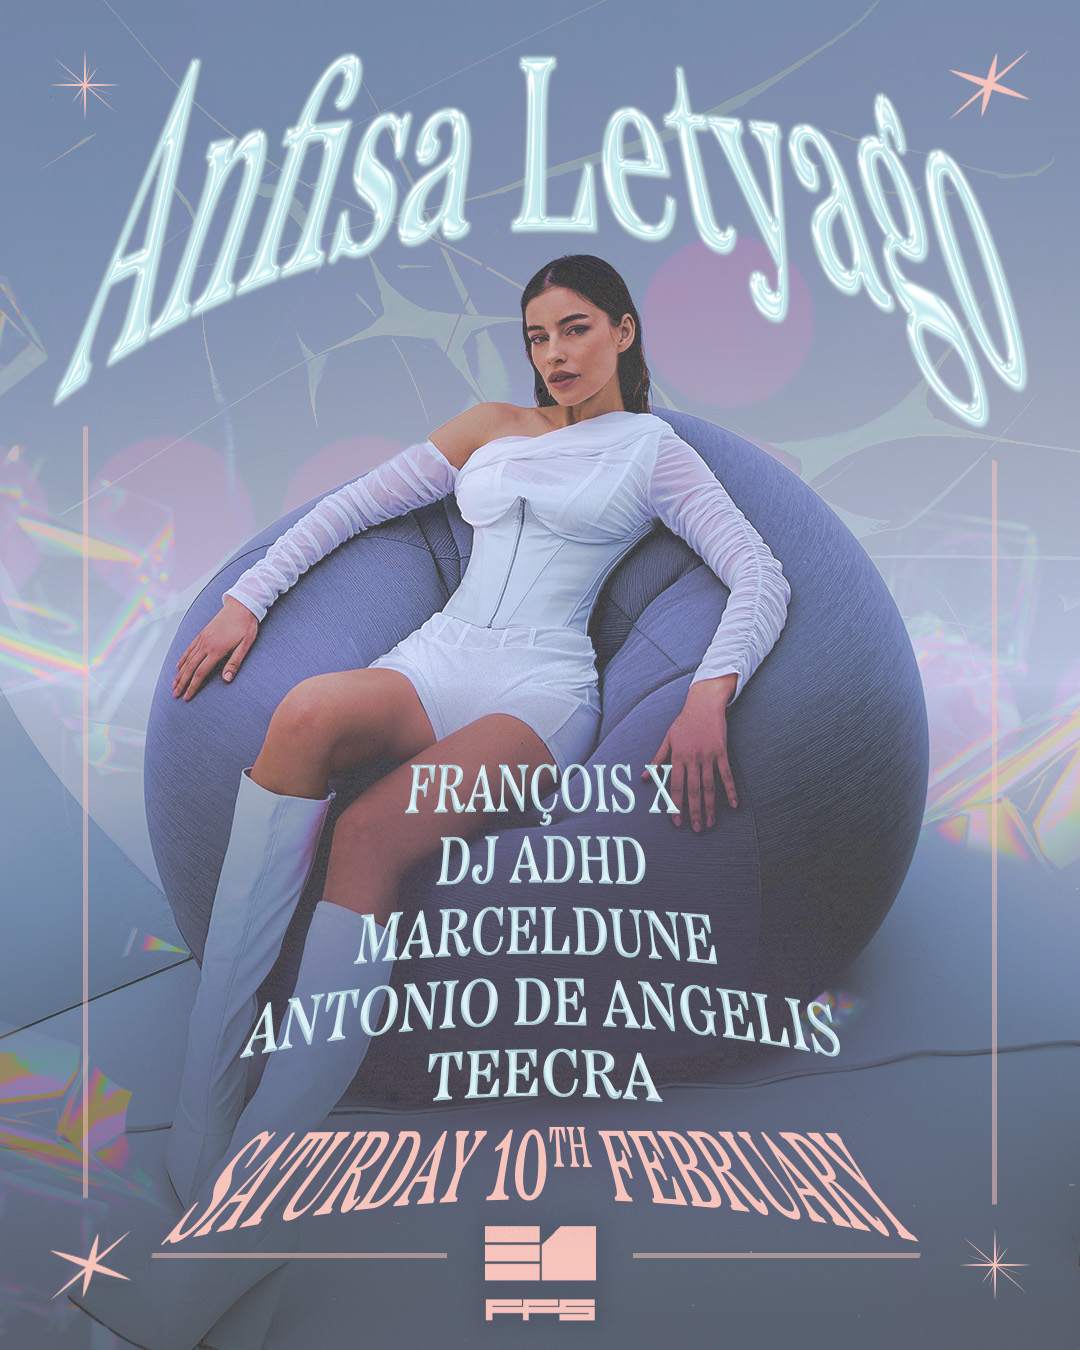 Anfisa Letyago, François X, DJ ADHD - Página frontal